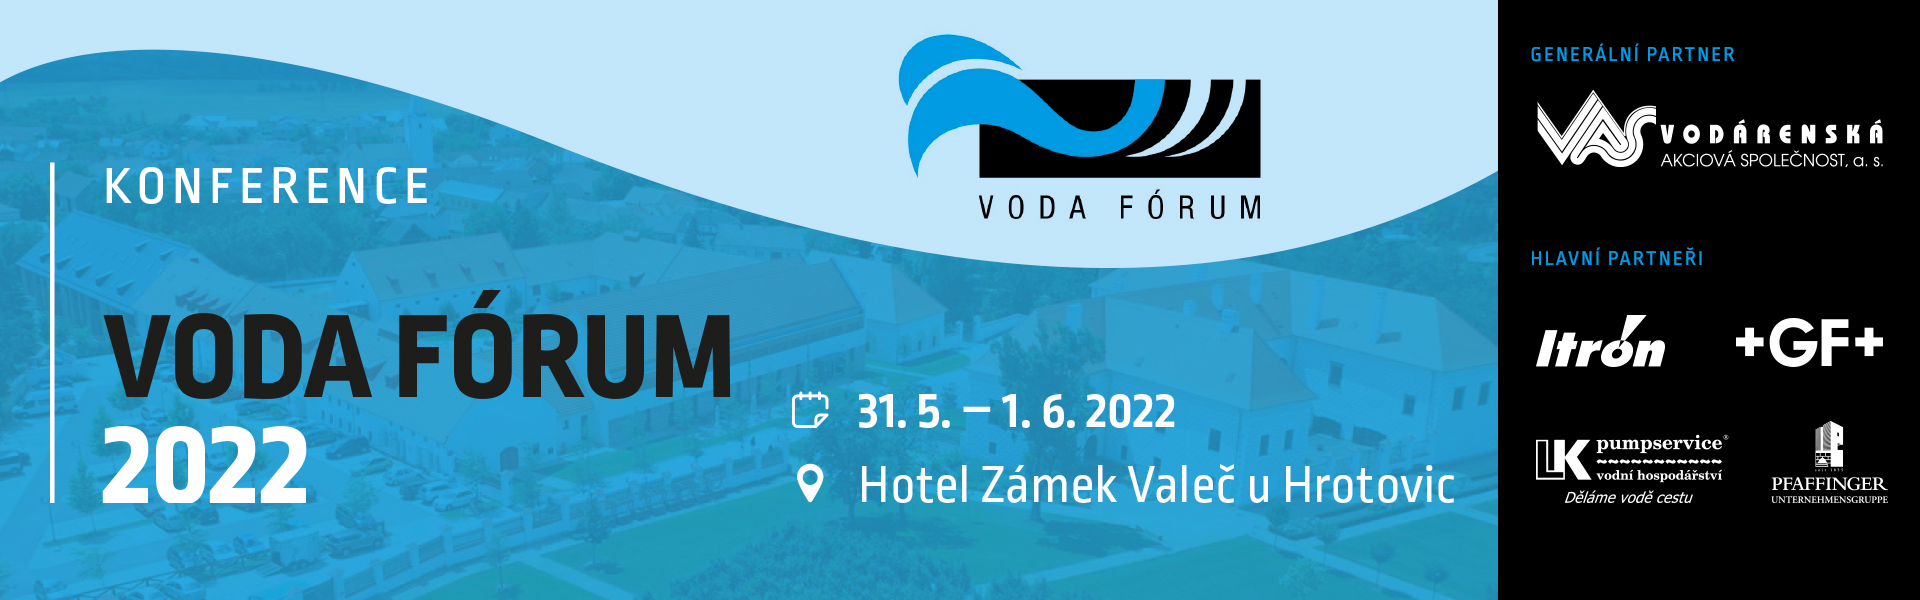 Konference VODA FÓRUM